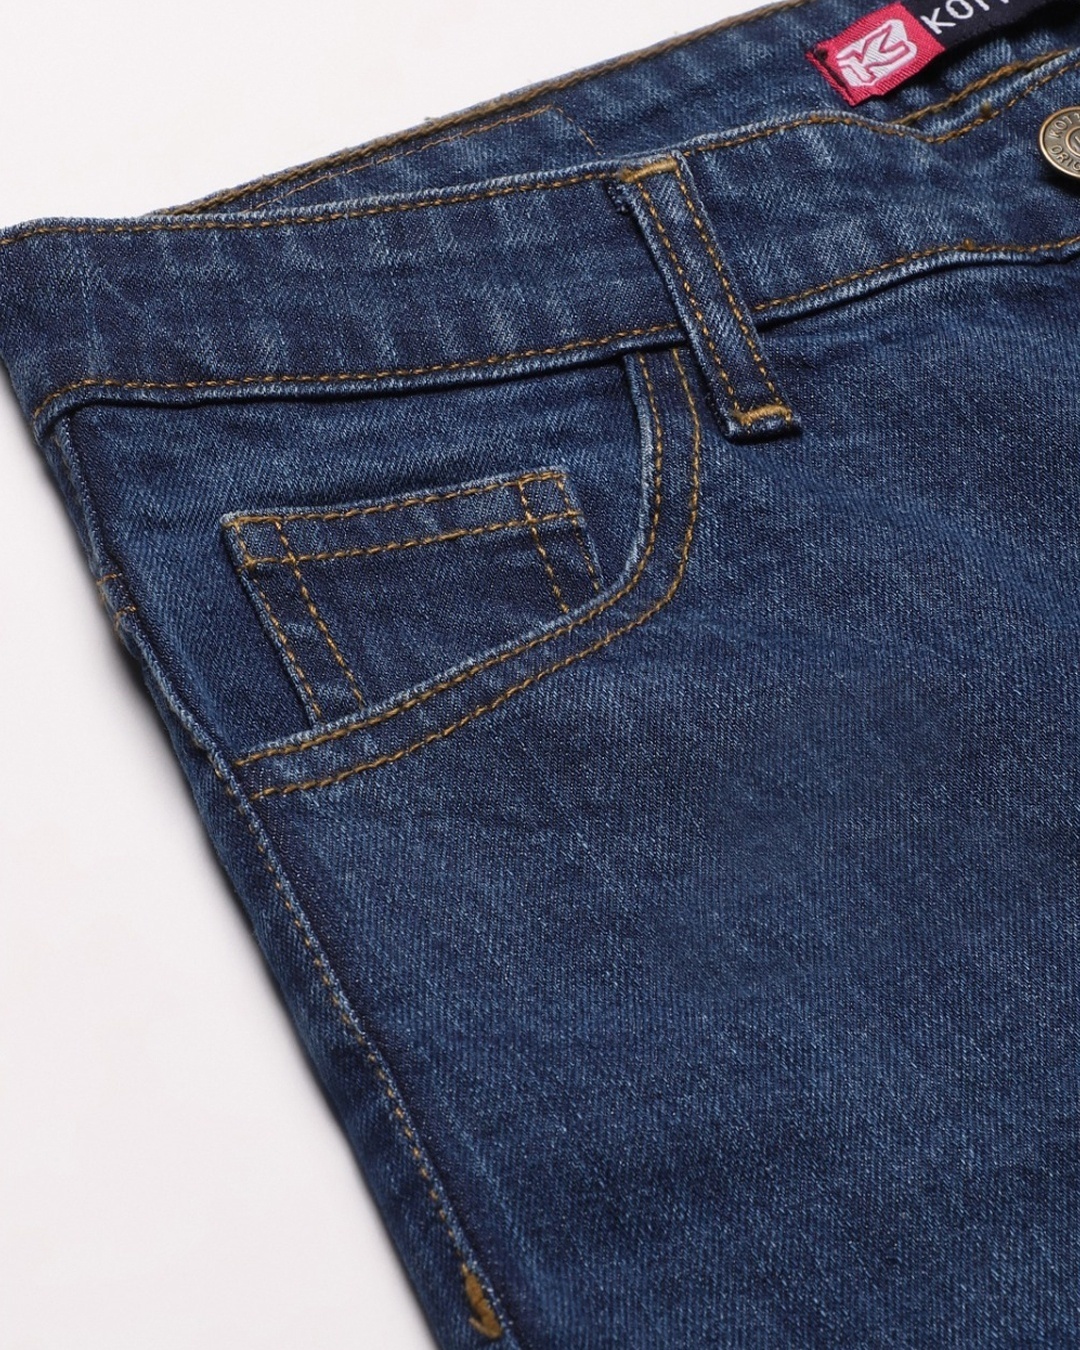 Shop Women's Blue Mid Rise Jeans